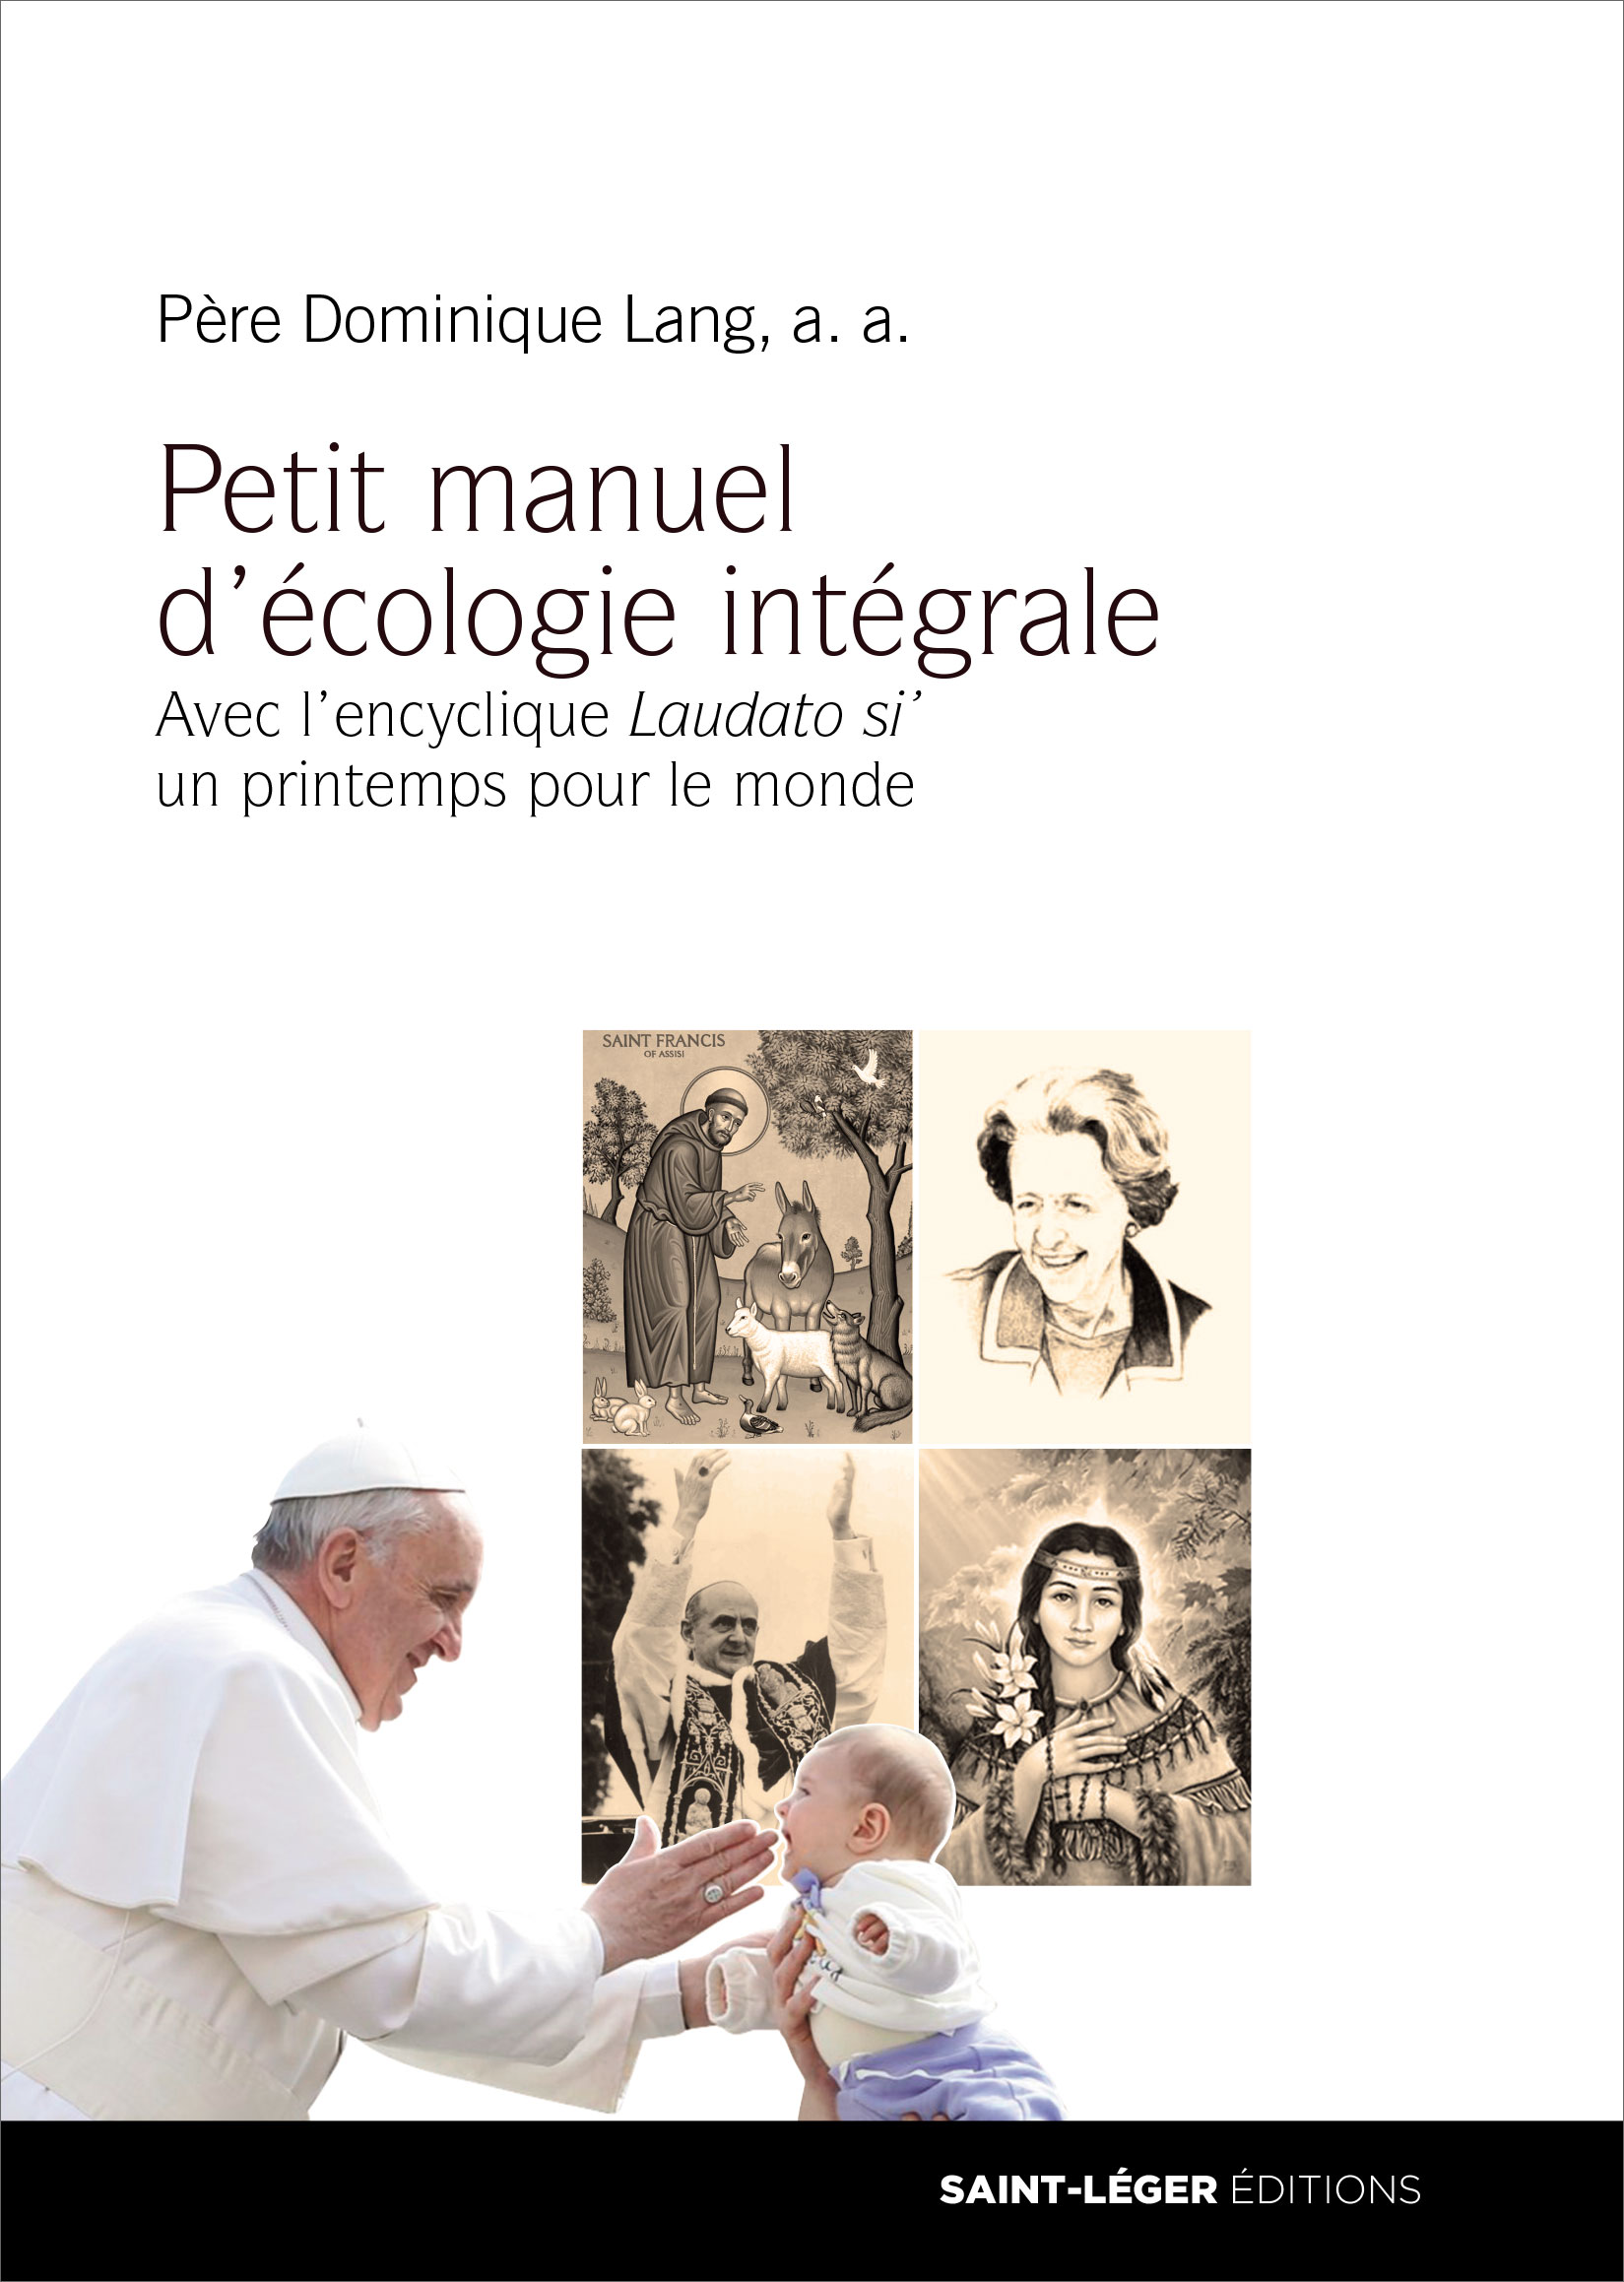 Pre Dominique Lang, Petit manuel d'cologie intgrale, Laudato si,